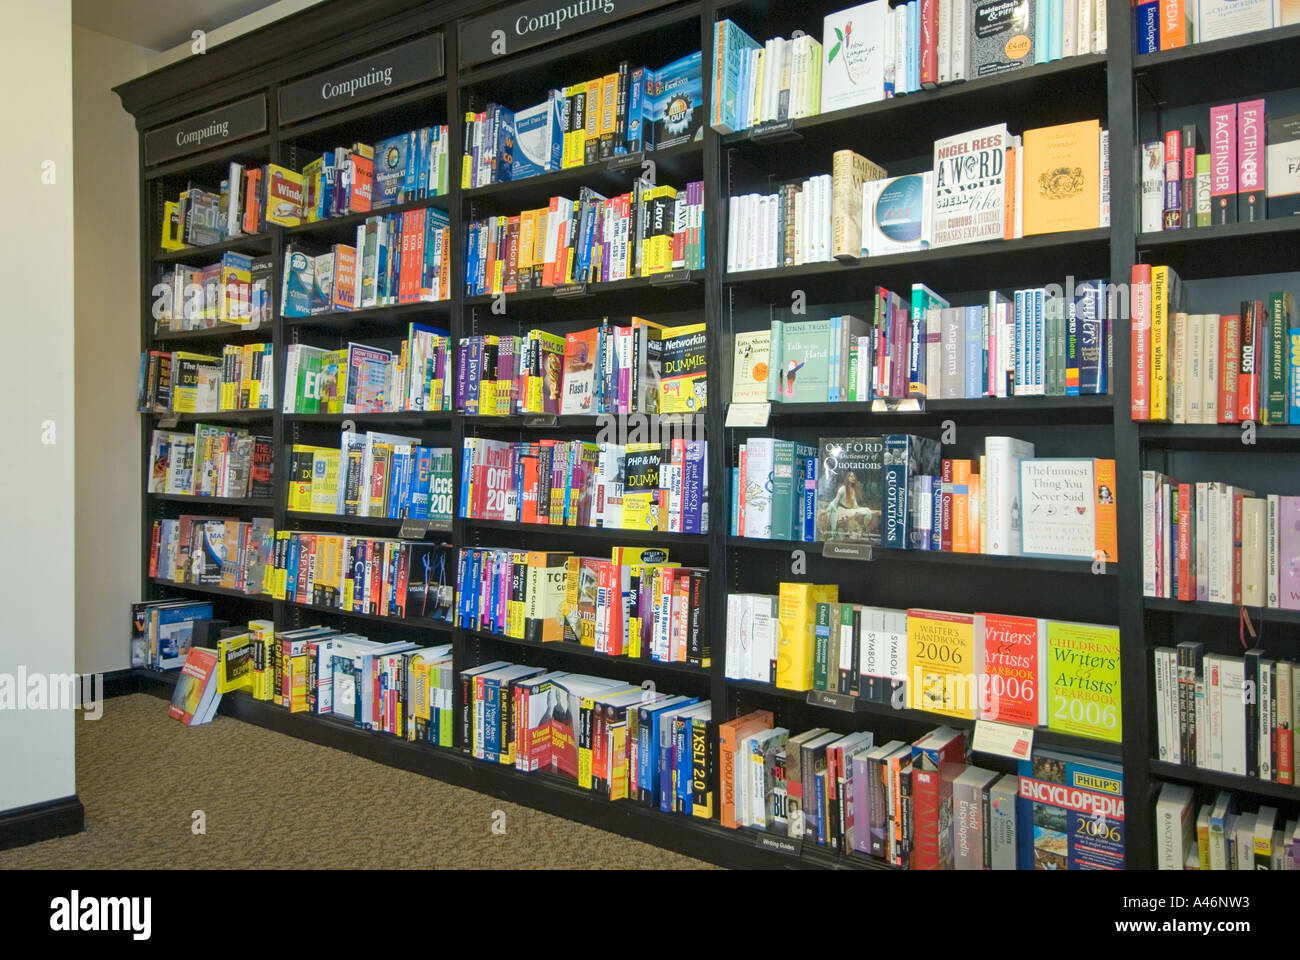 Farbenfrohe Innenauslage von Regalen voll mit vielen Sachbüchern zu zahlreichen Themen, die in der mit Teppich ausgelegten Buchhandlung England UK verkauft werden Stockfoto